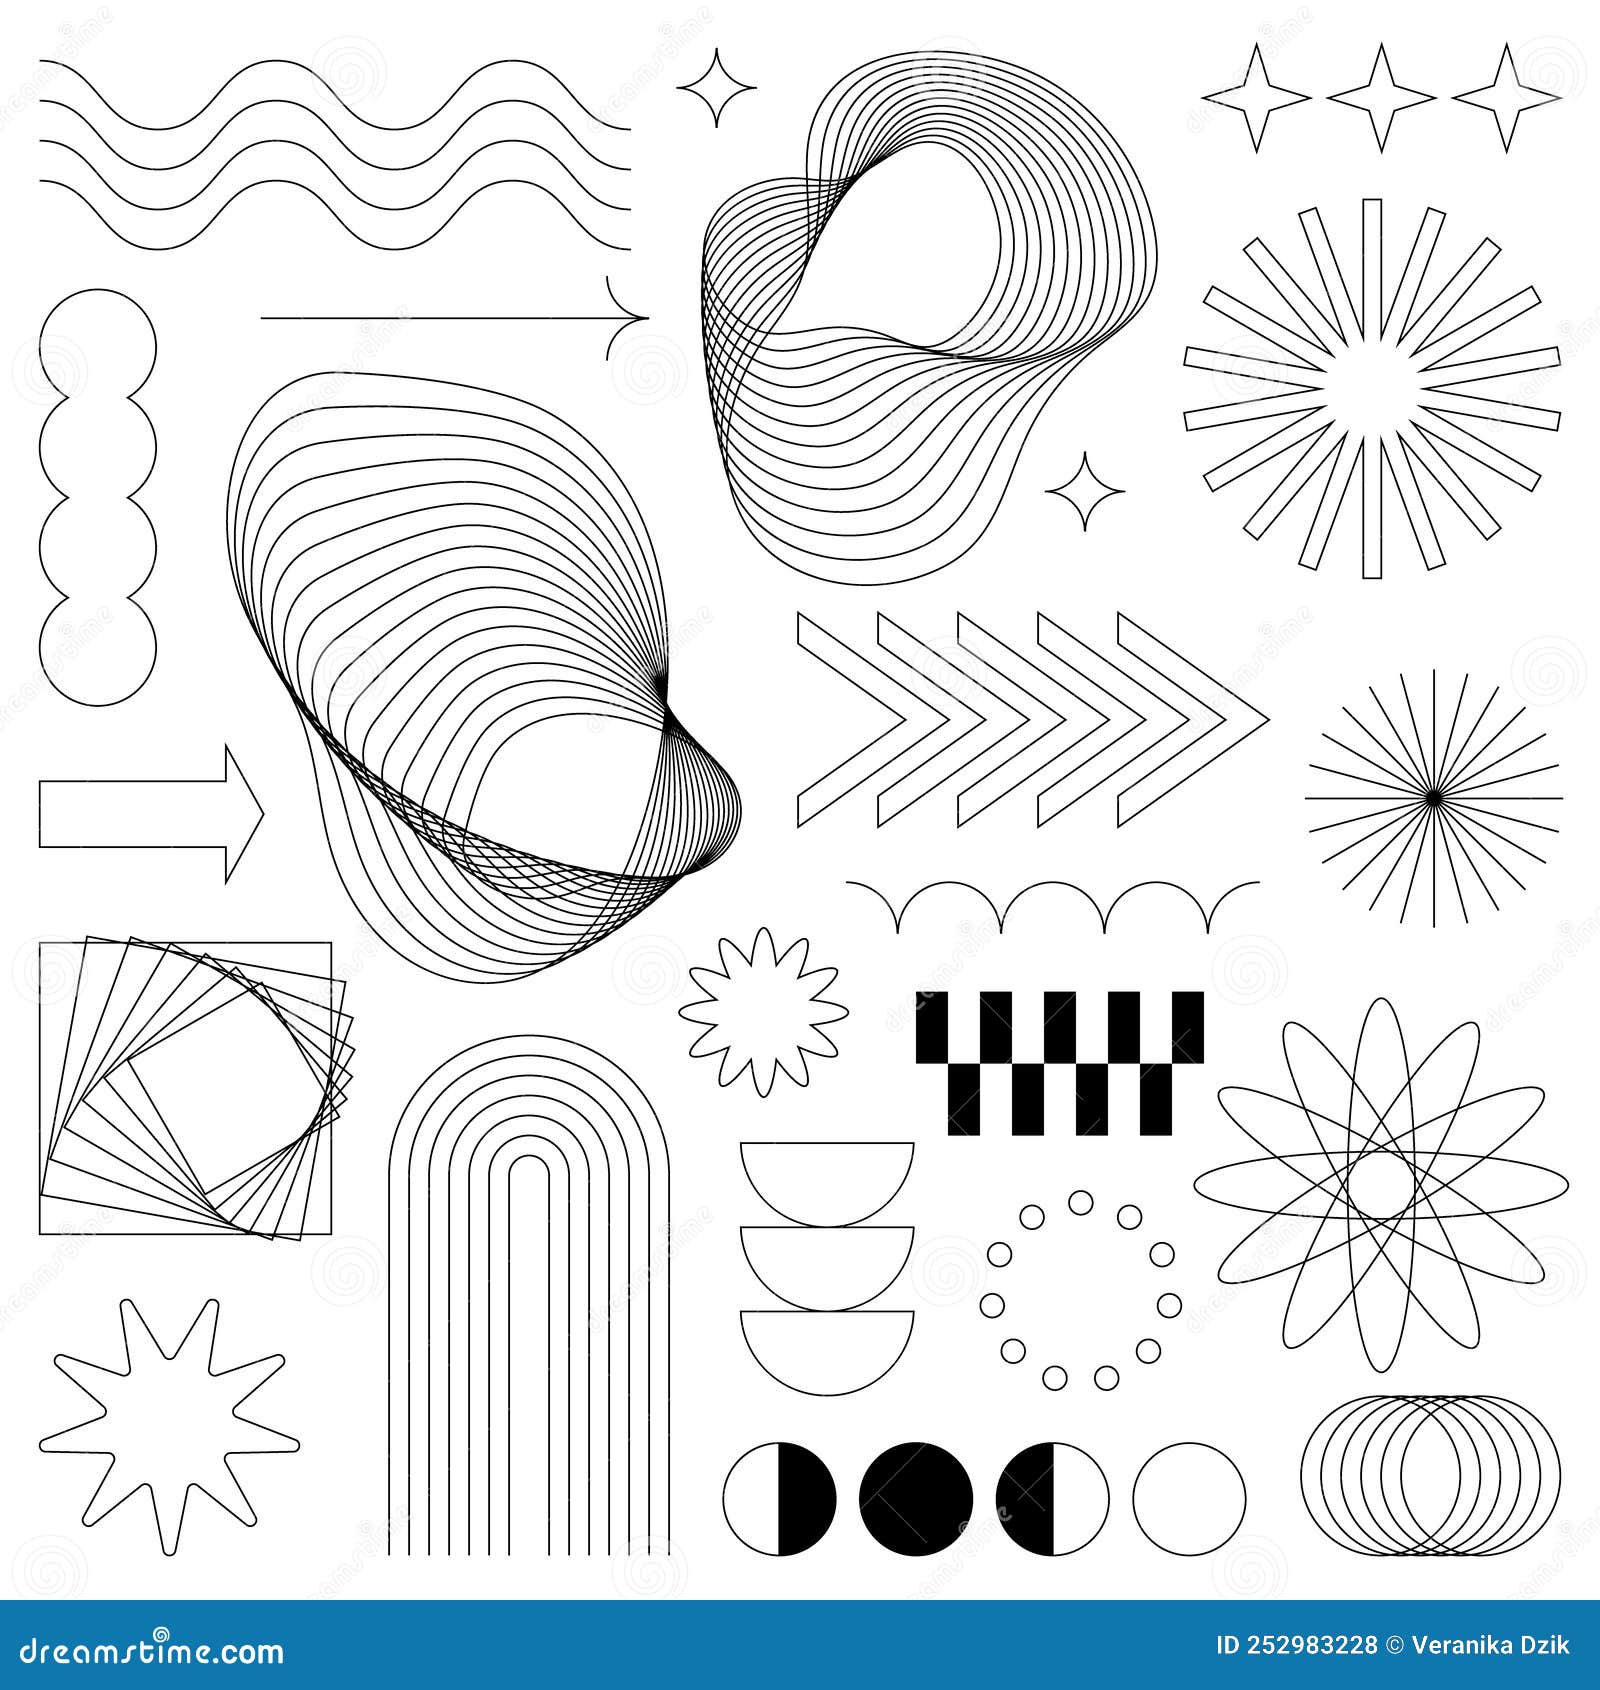 Y2K Aesthetic Institute  Graphic design posters, Graphic poster, Retro  futurism